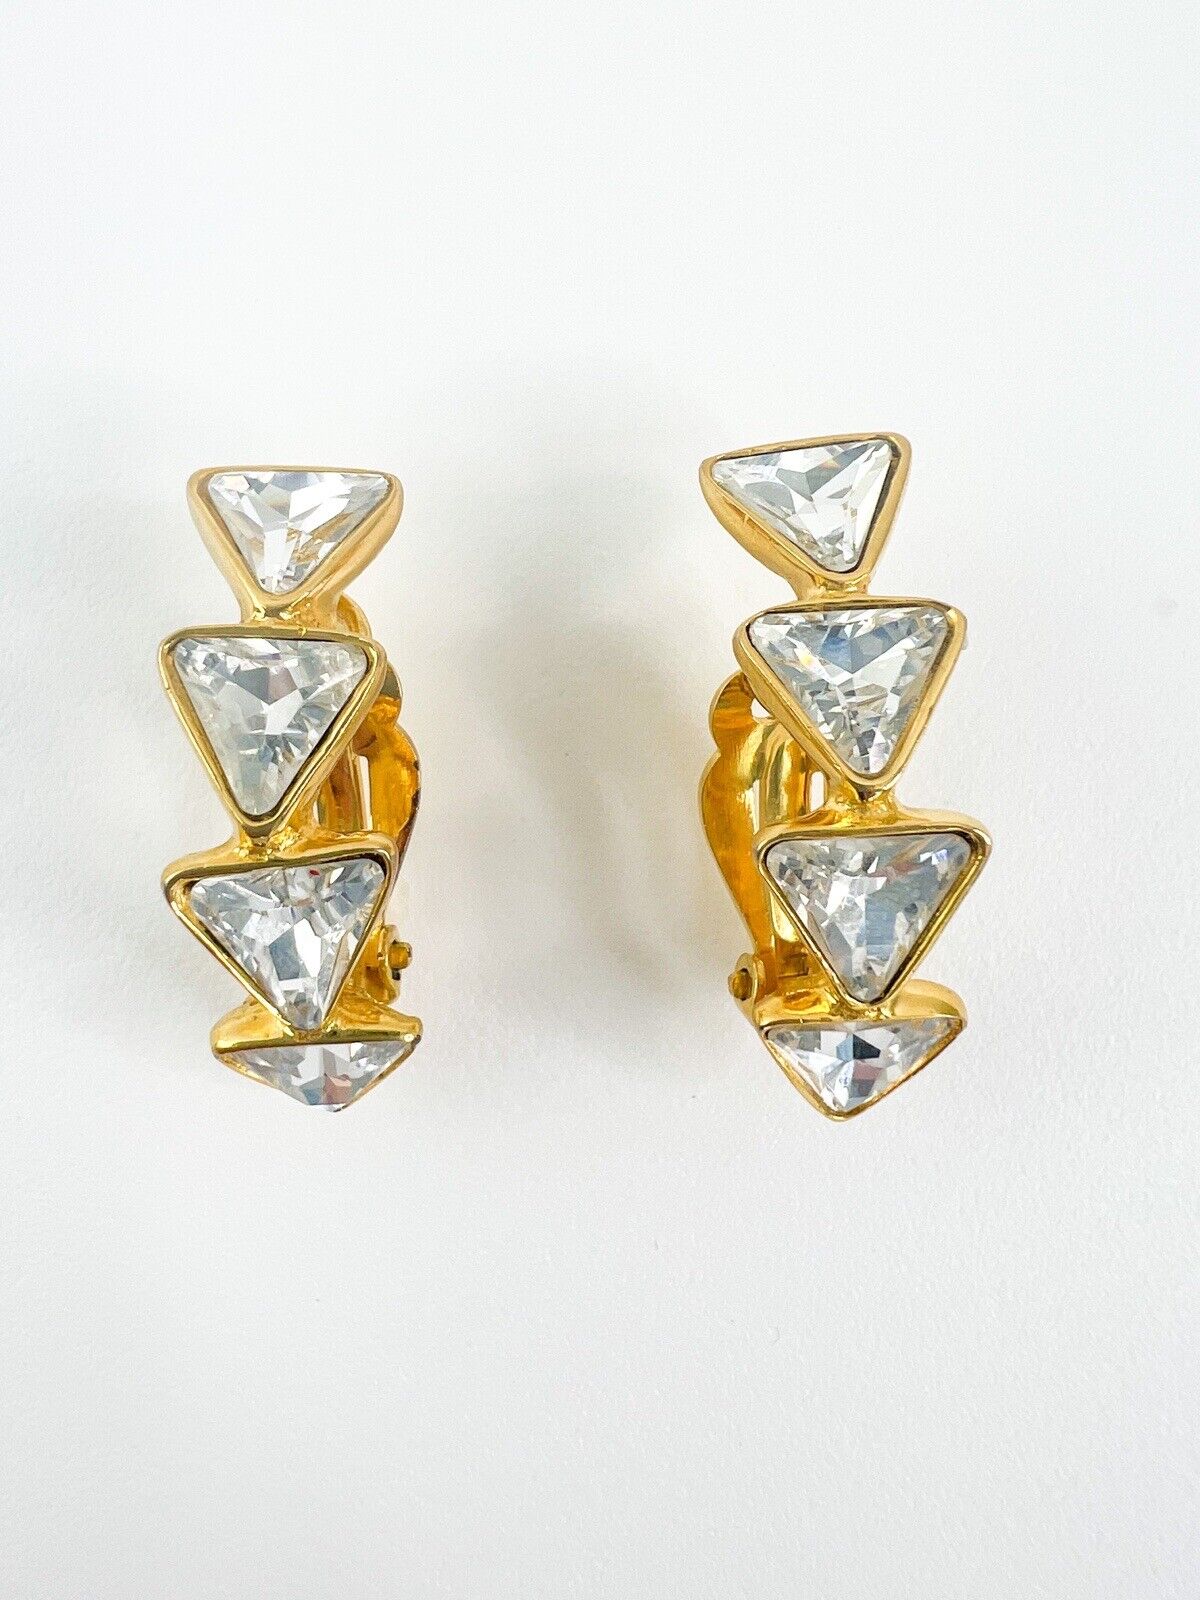 Vintage YSL Earrings, Yves Saint Laurent Earrings, Gift for her, Vintage Hoop earrings Gold, Earrings Clip On, Vintage Rhinestones